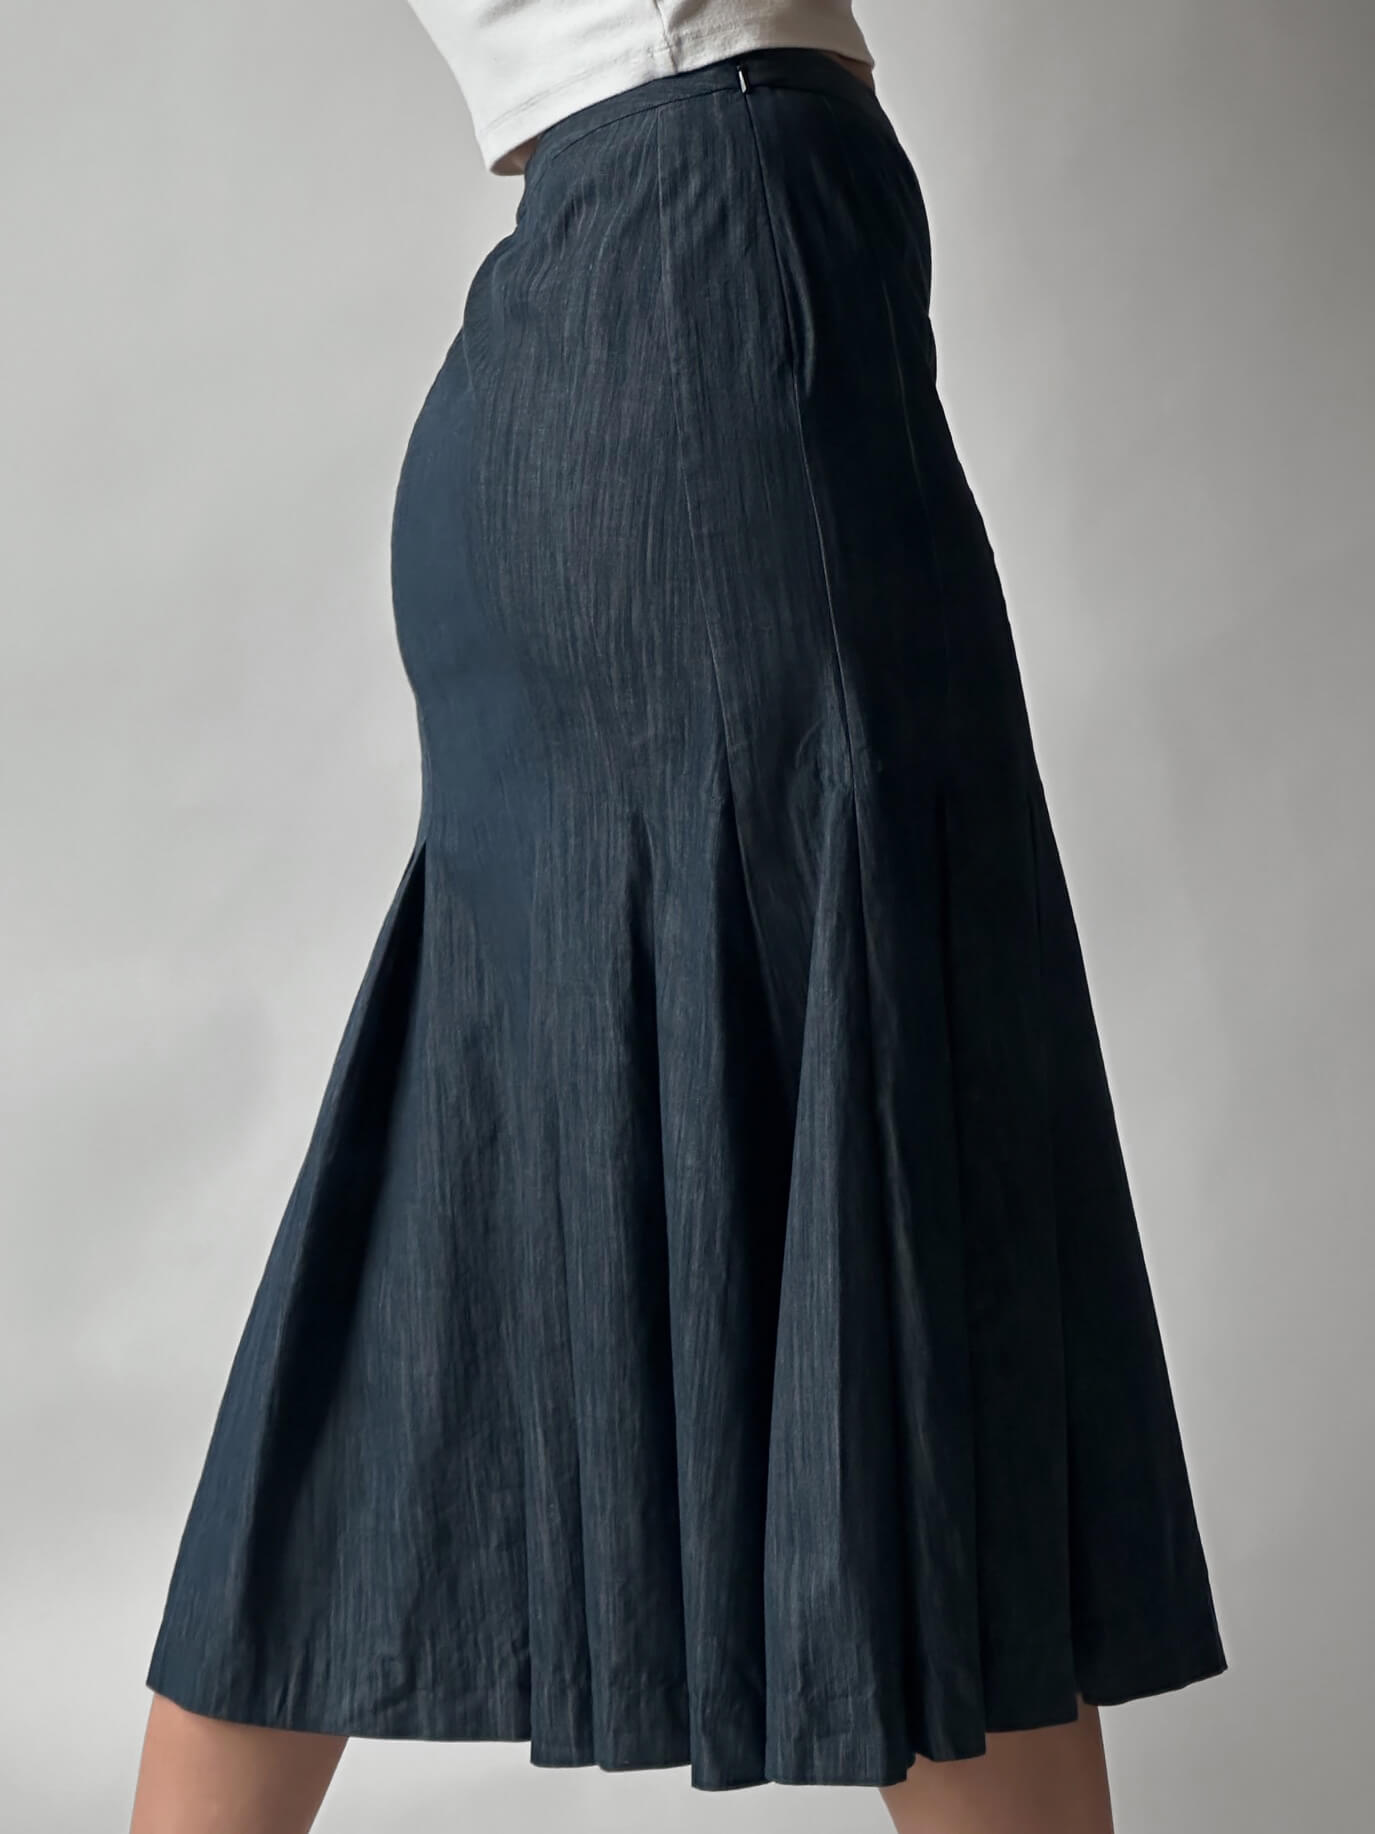 Vintage Italian Denim Pleated Skirt | S